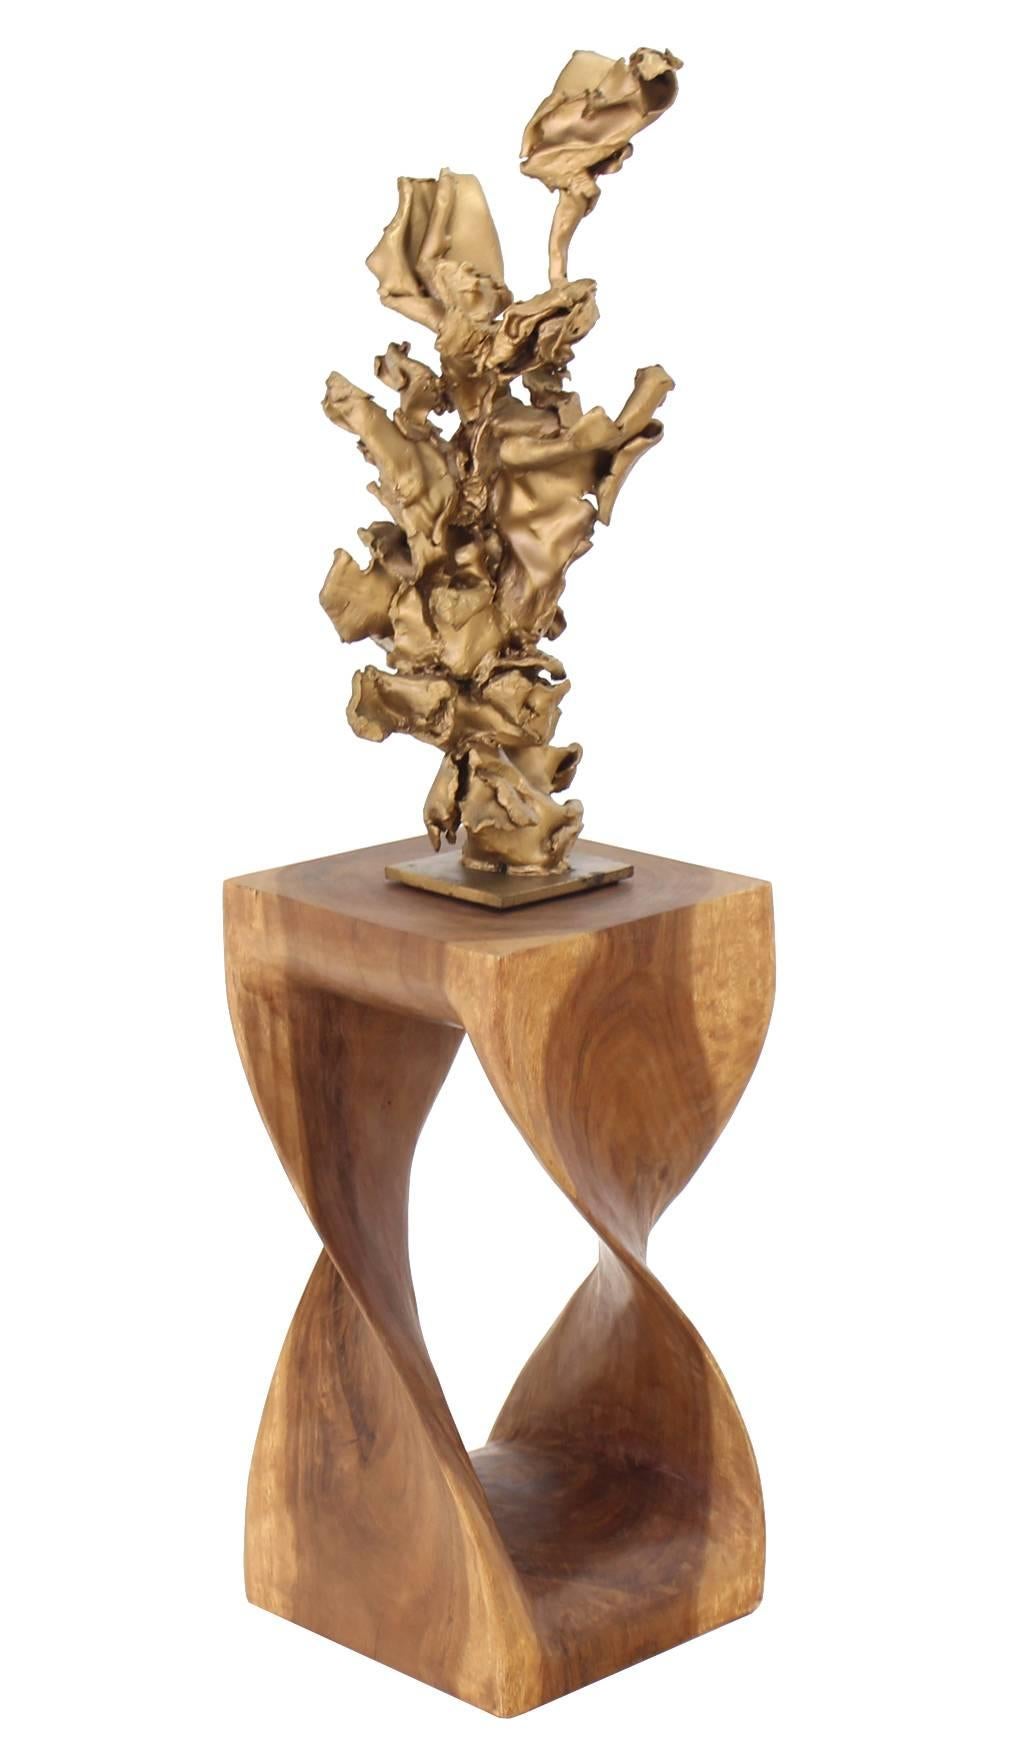 Solid wood organic shape carved pedestal.